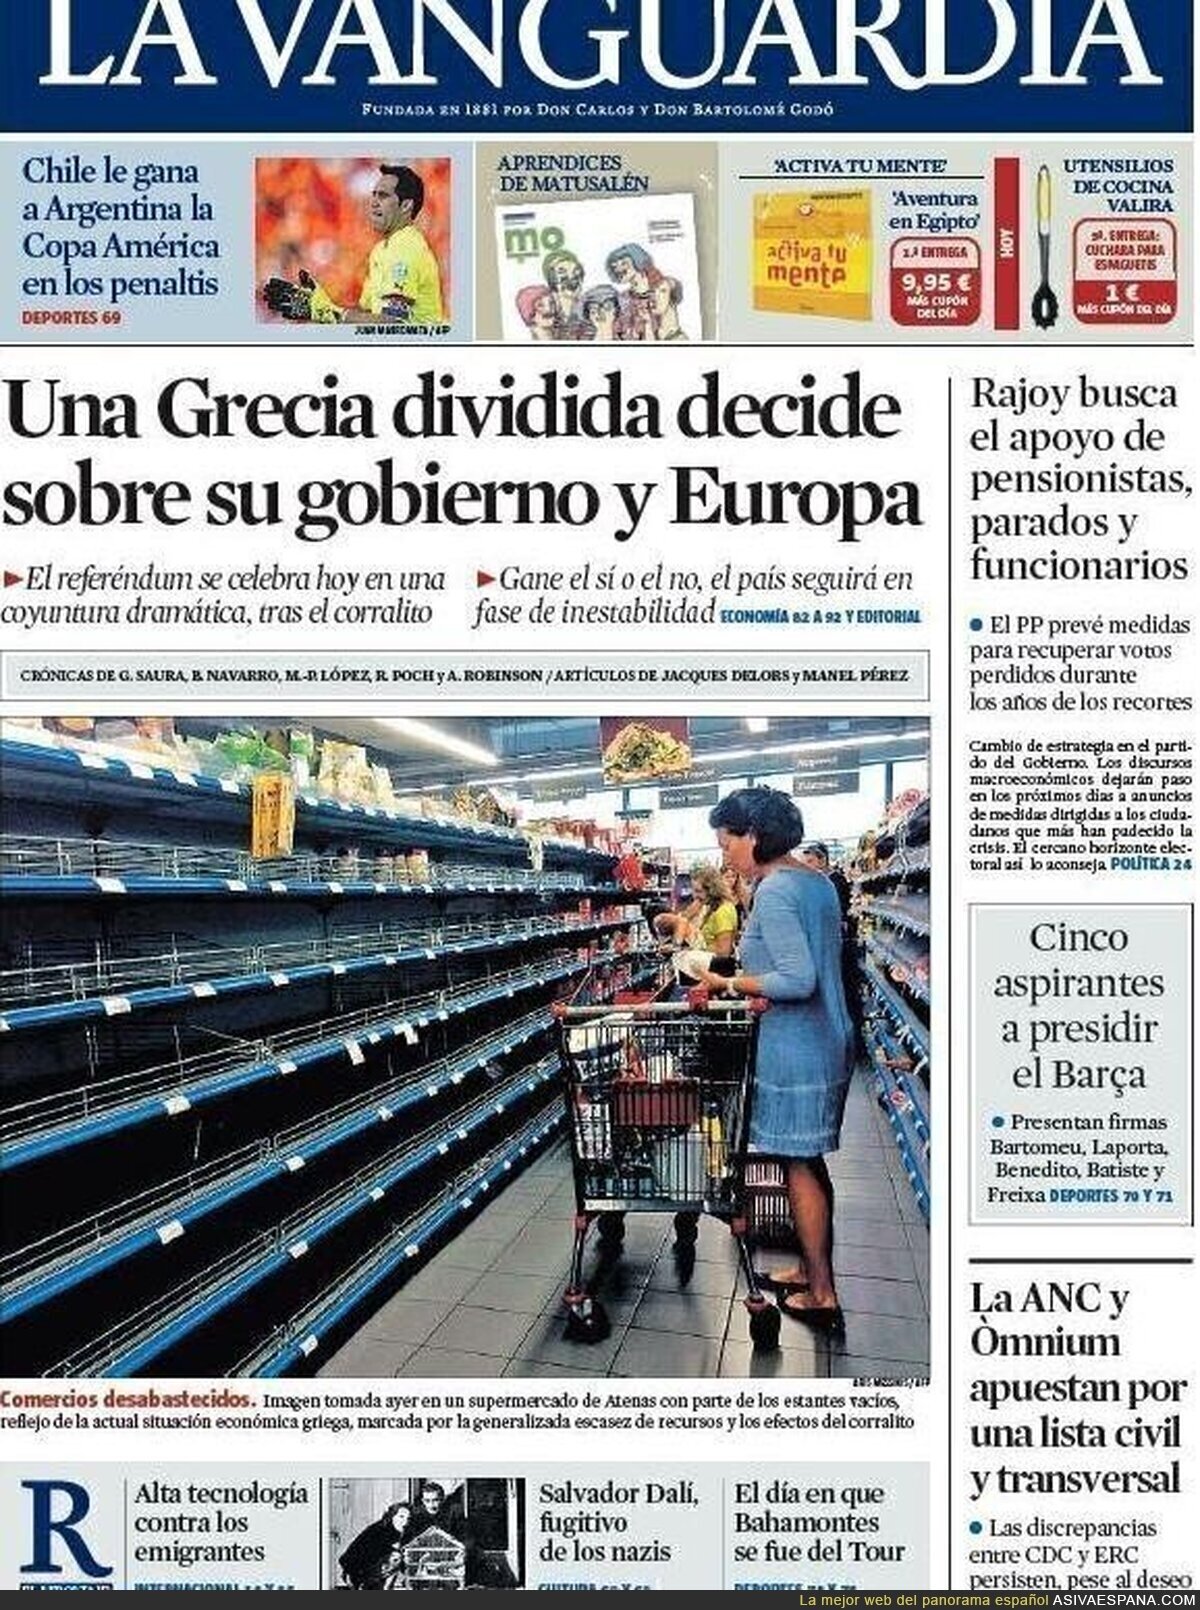 Periodicos españoles difunden imagenes manipuladas de desabastecimiento en supermercados de Grecia